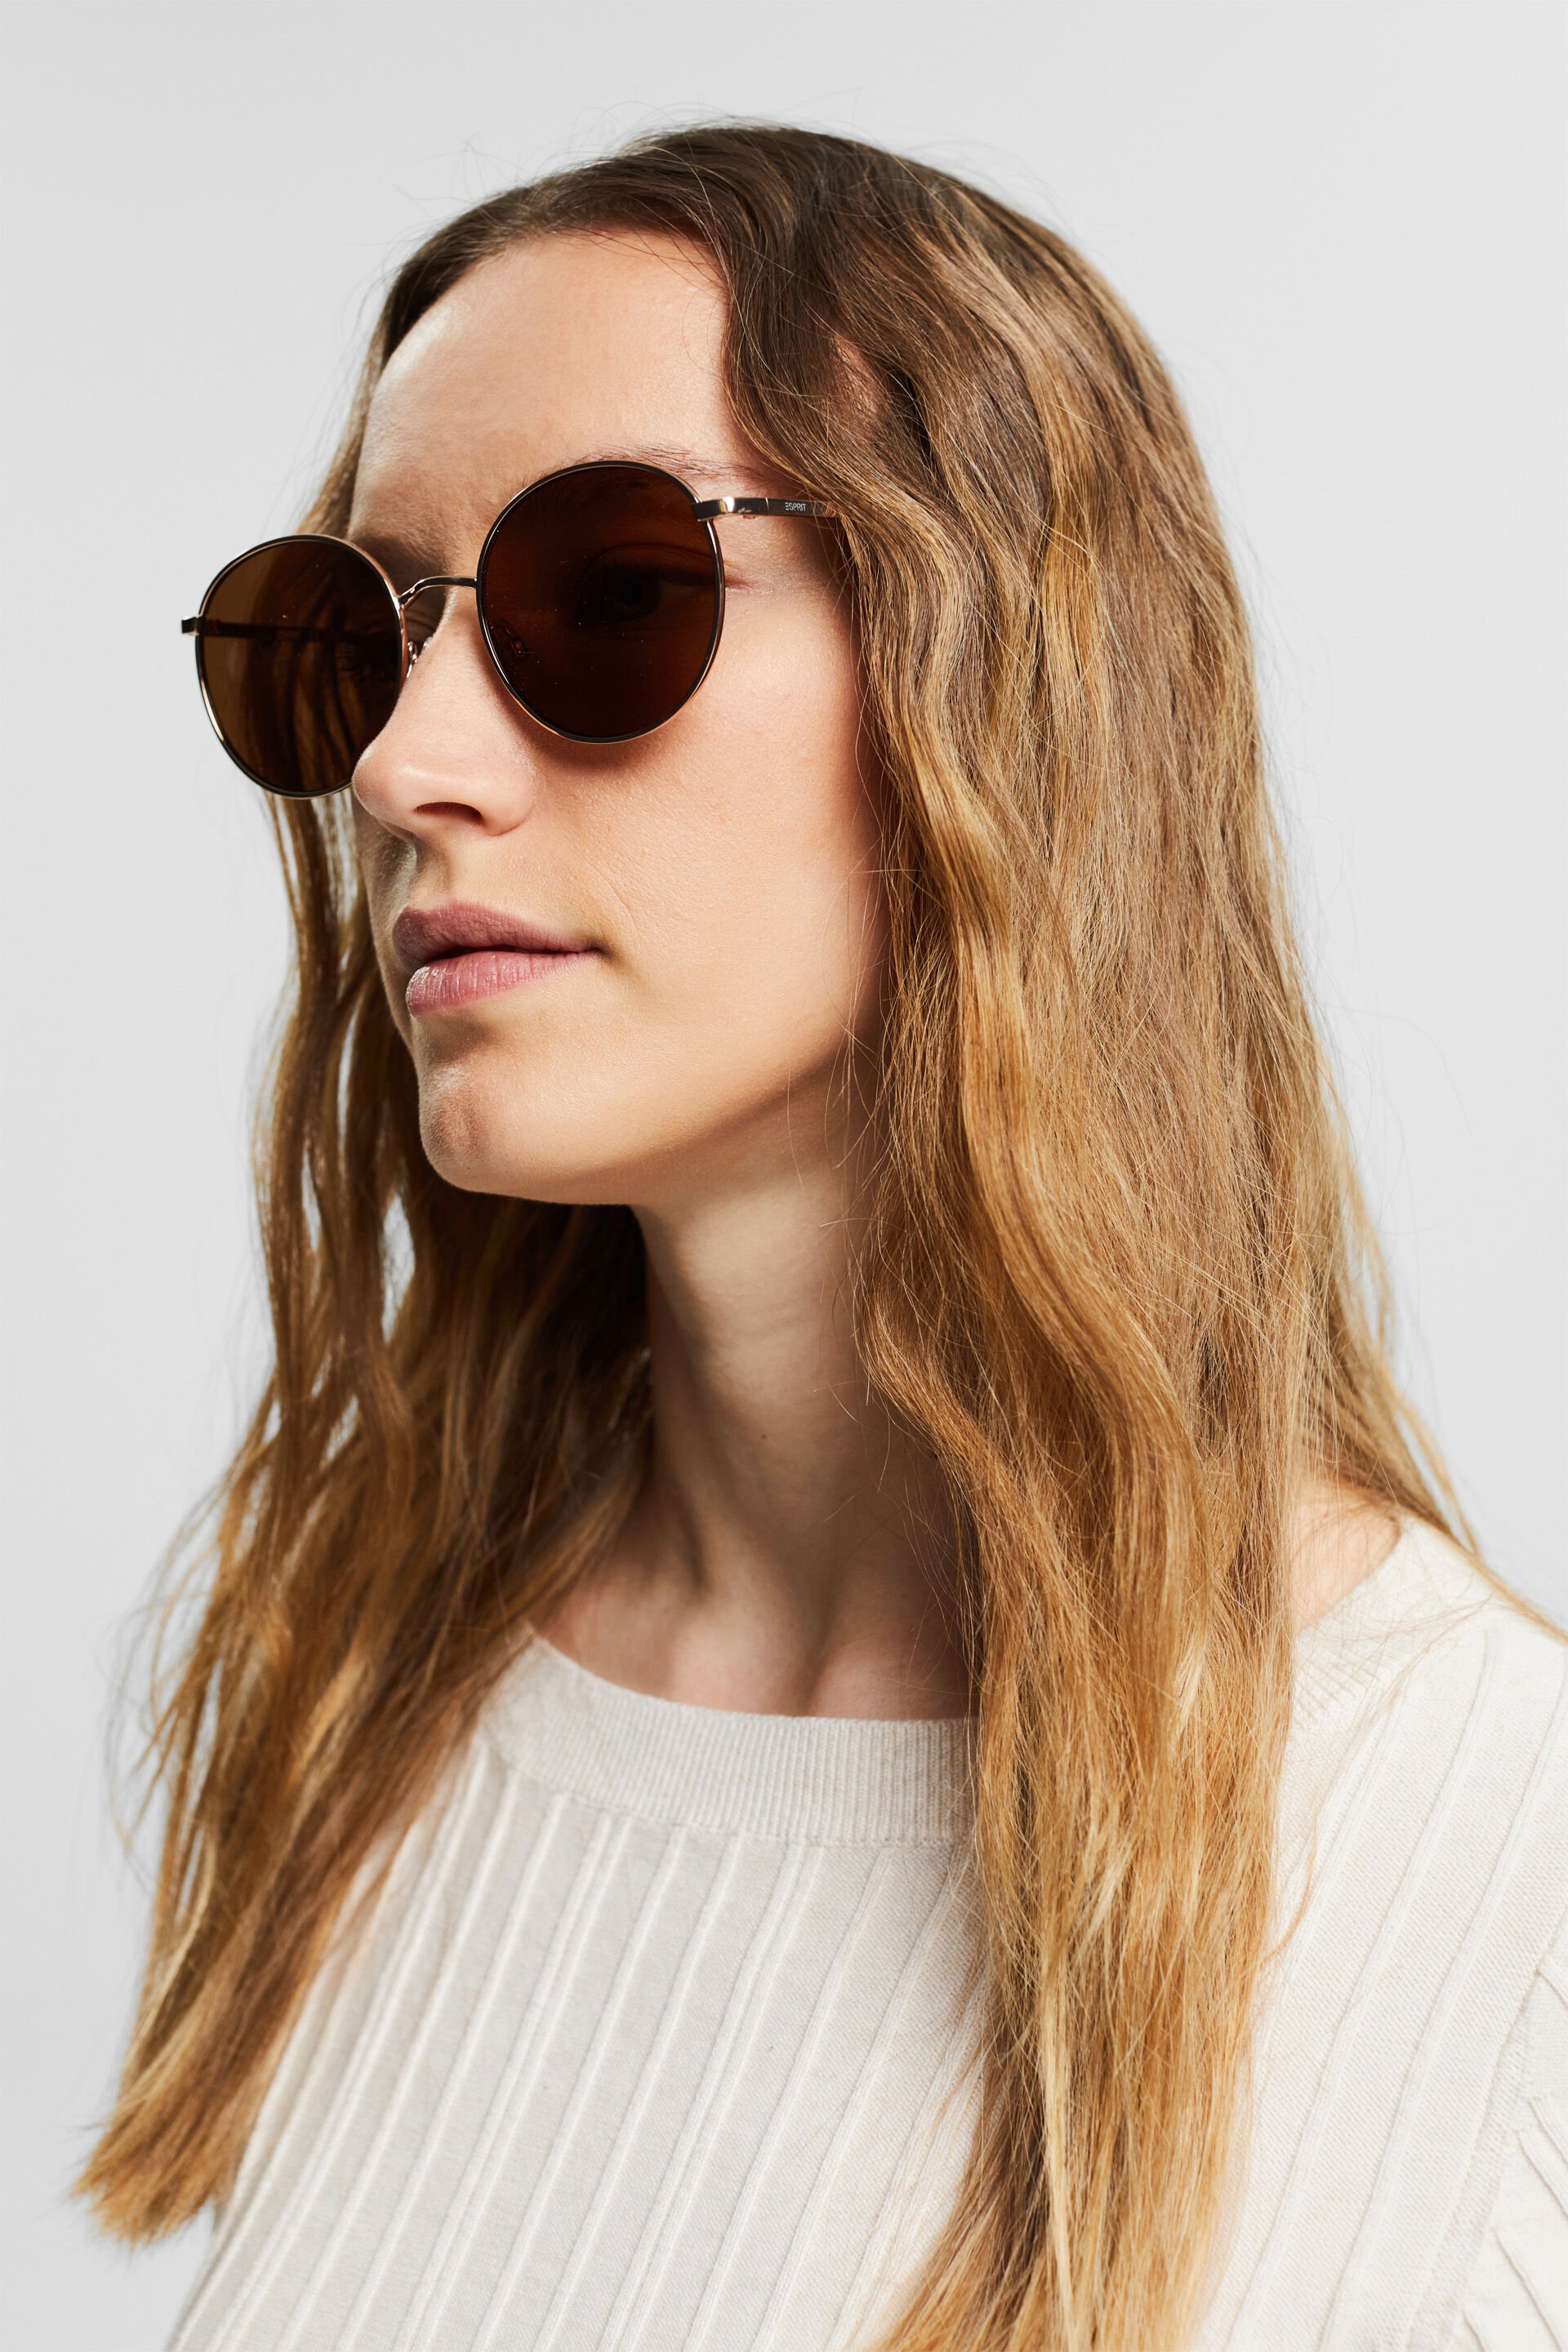 Esprit Online Store Sonnenbrille mit Metallrahmen